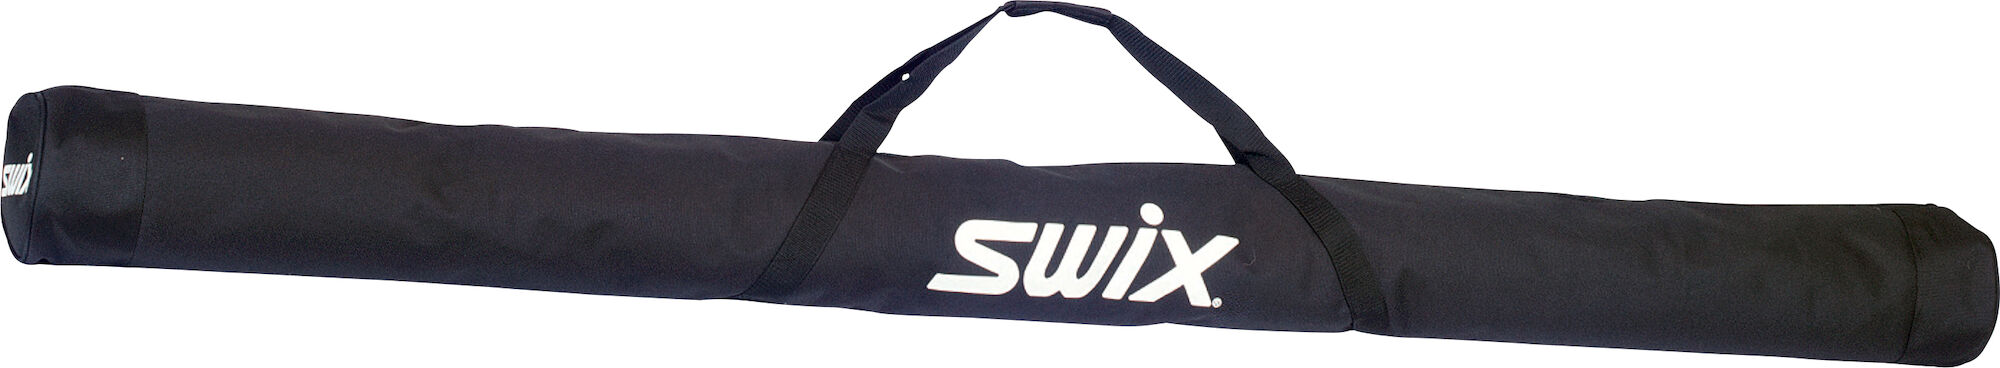 Swix Nordic Ski Bag 2 Pairs, 215cm